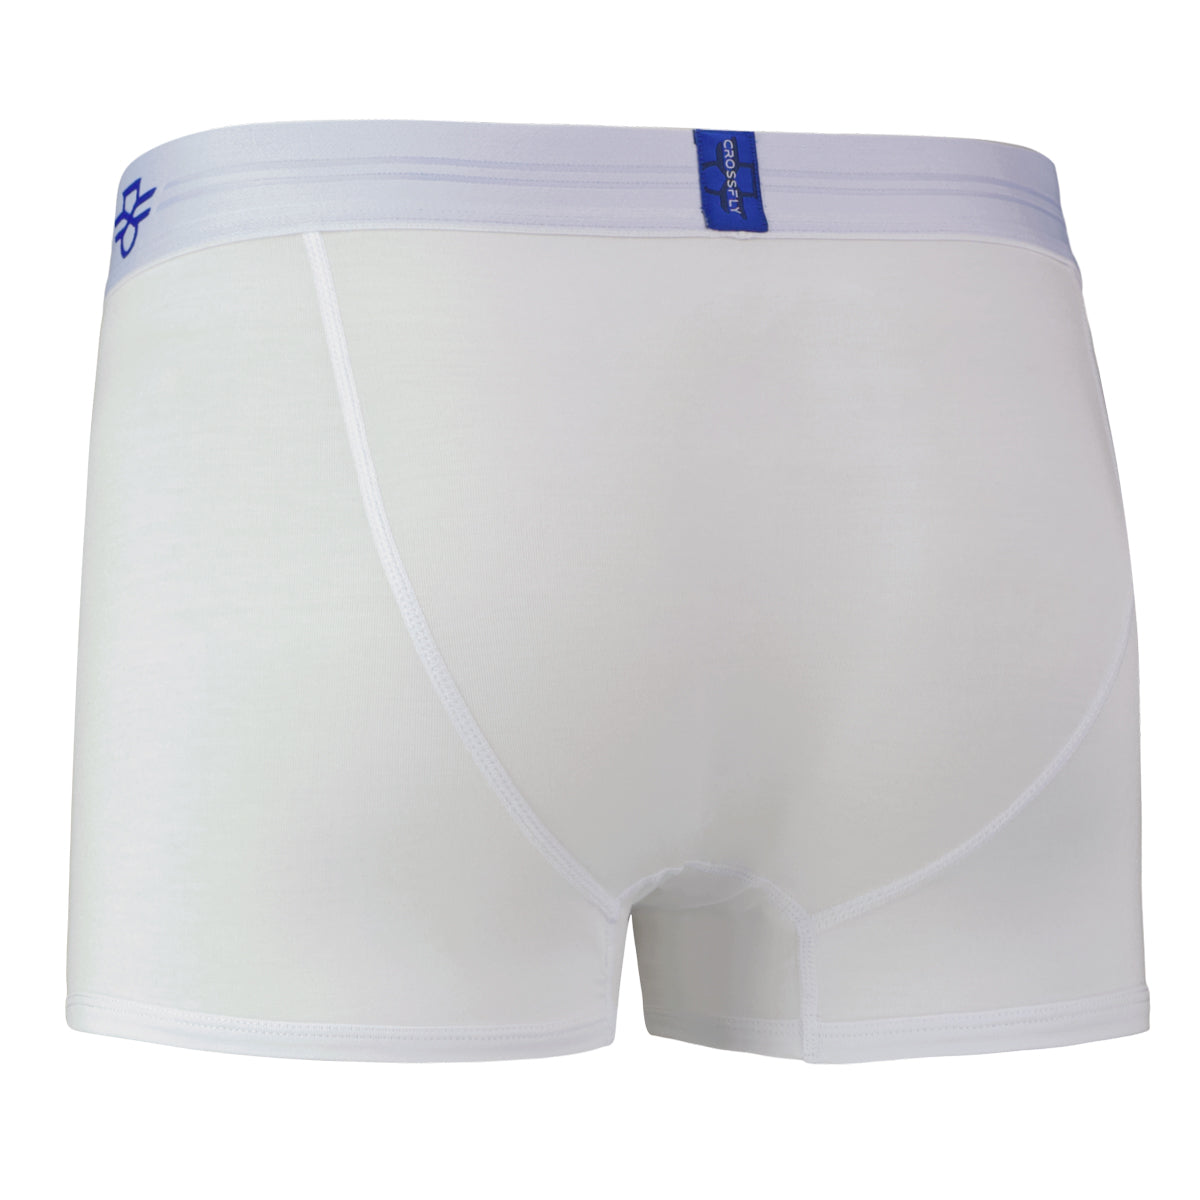 Crossfly Men's Underwear IKON X 3 Trunk Silver/Grey Modal